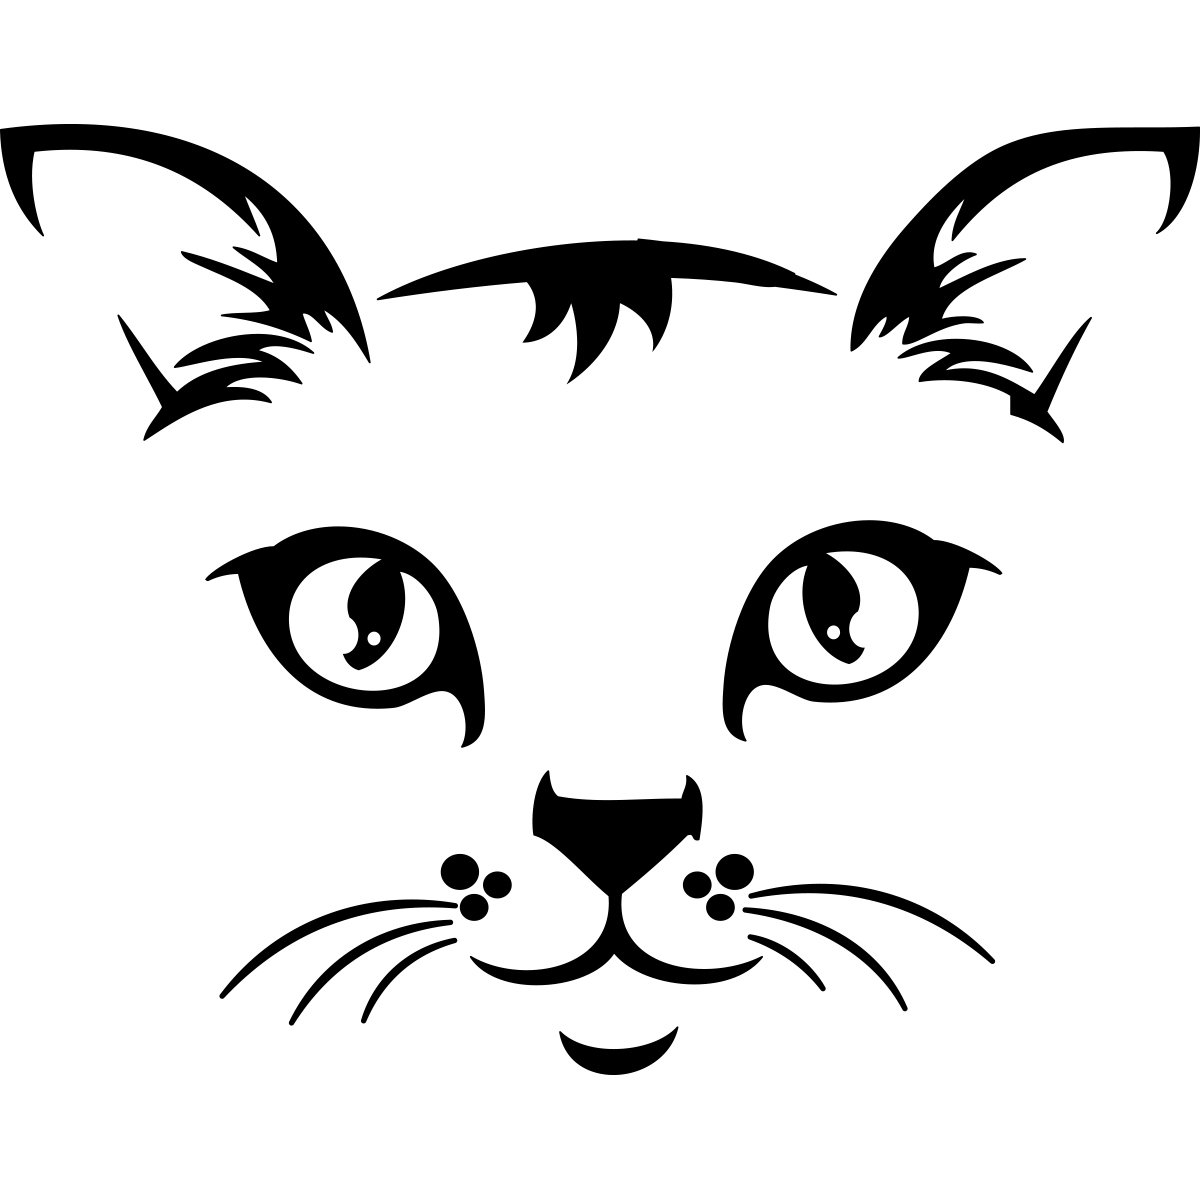 Sticker Tête de Chat Noir - Autocollant Tête de Chat Noir